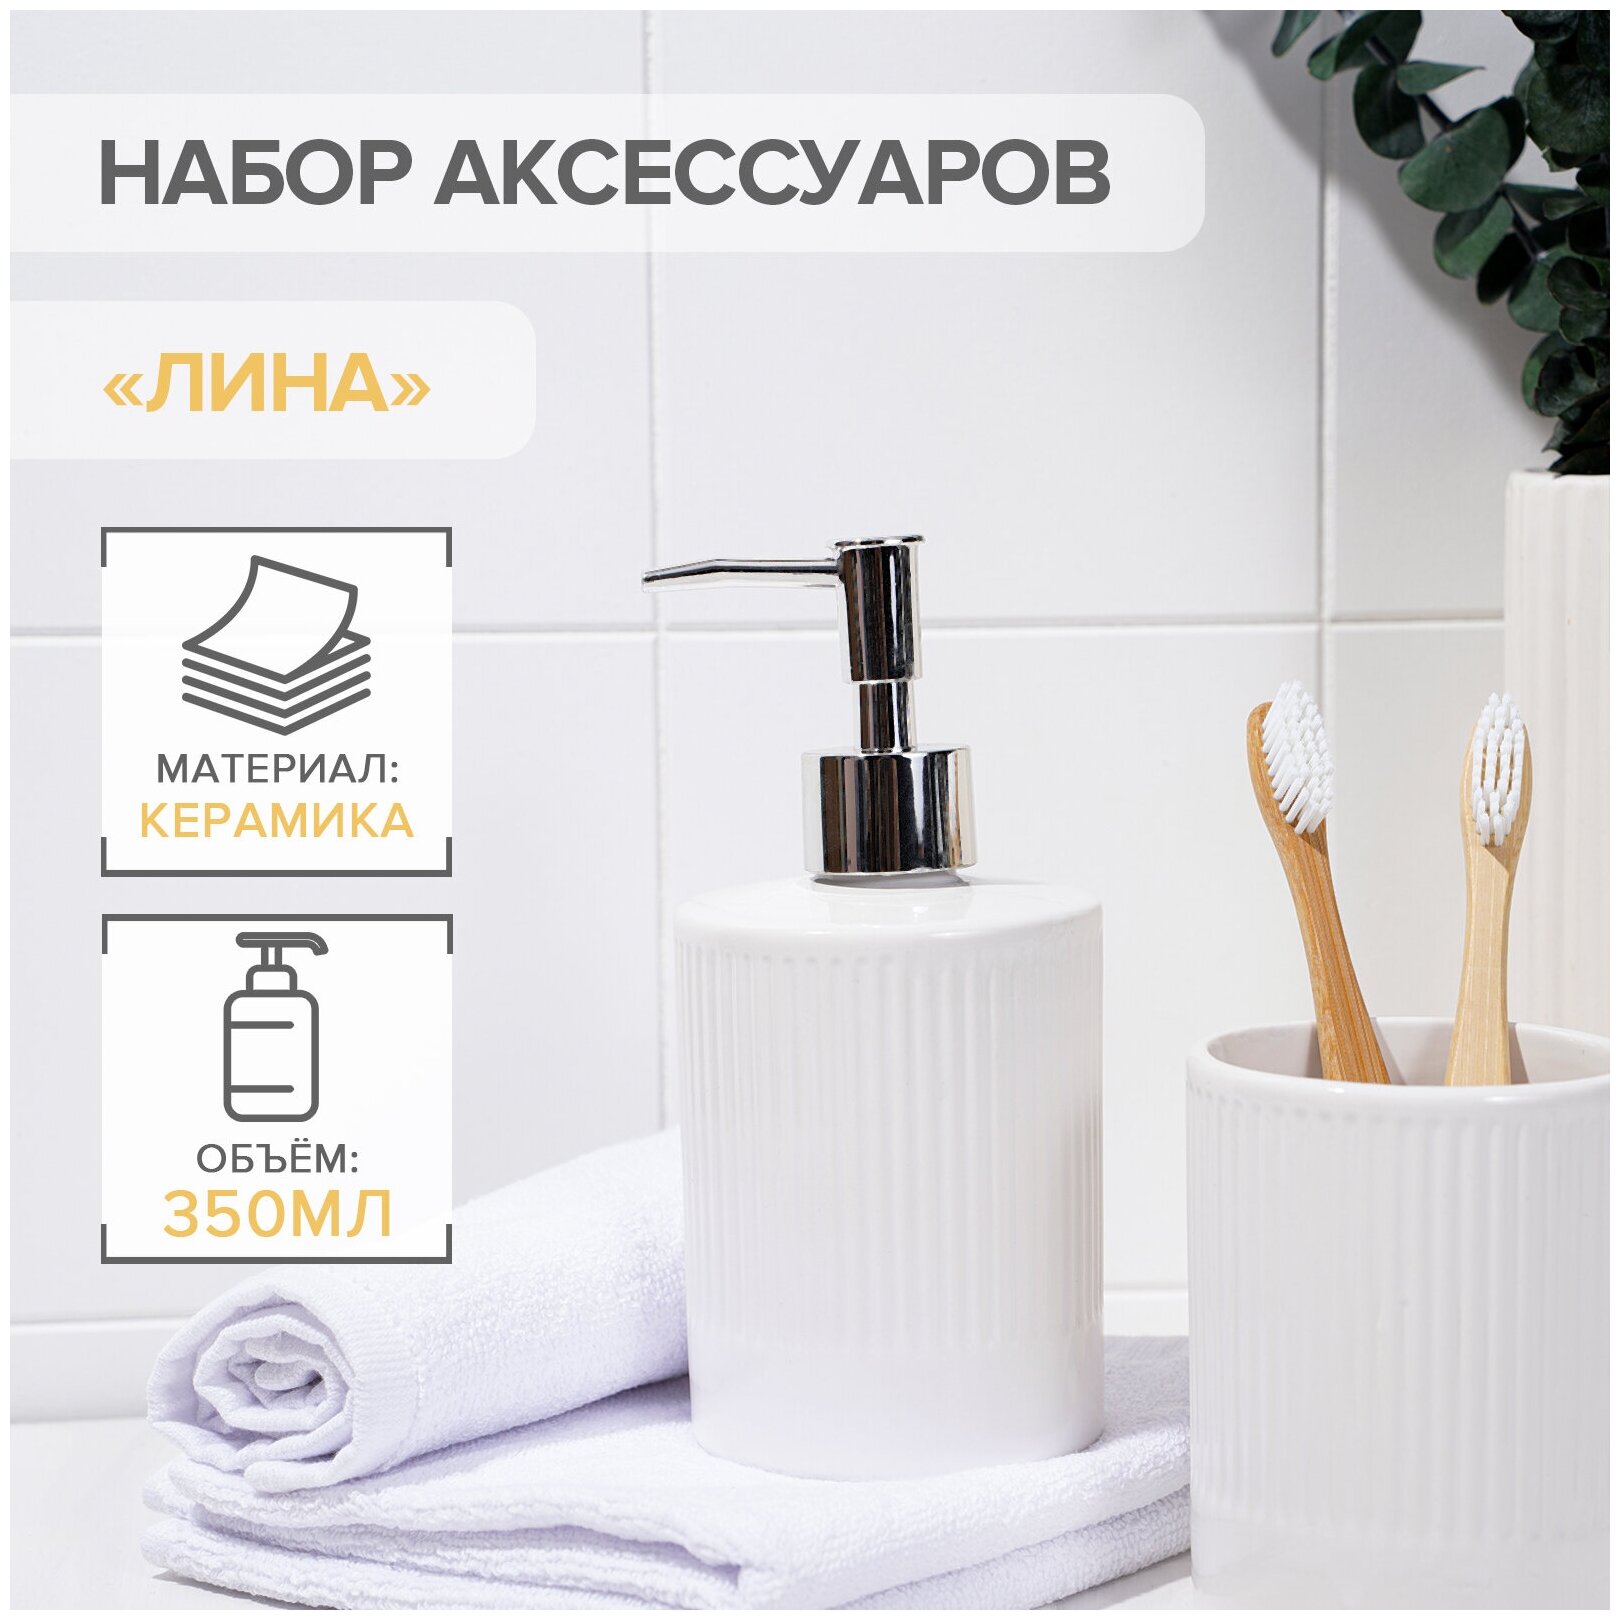 Набор для ванной комнаты «Лина» аксессуары 2 предмета (дозатор для мыла стакан) керамика цвет белый